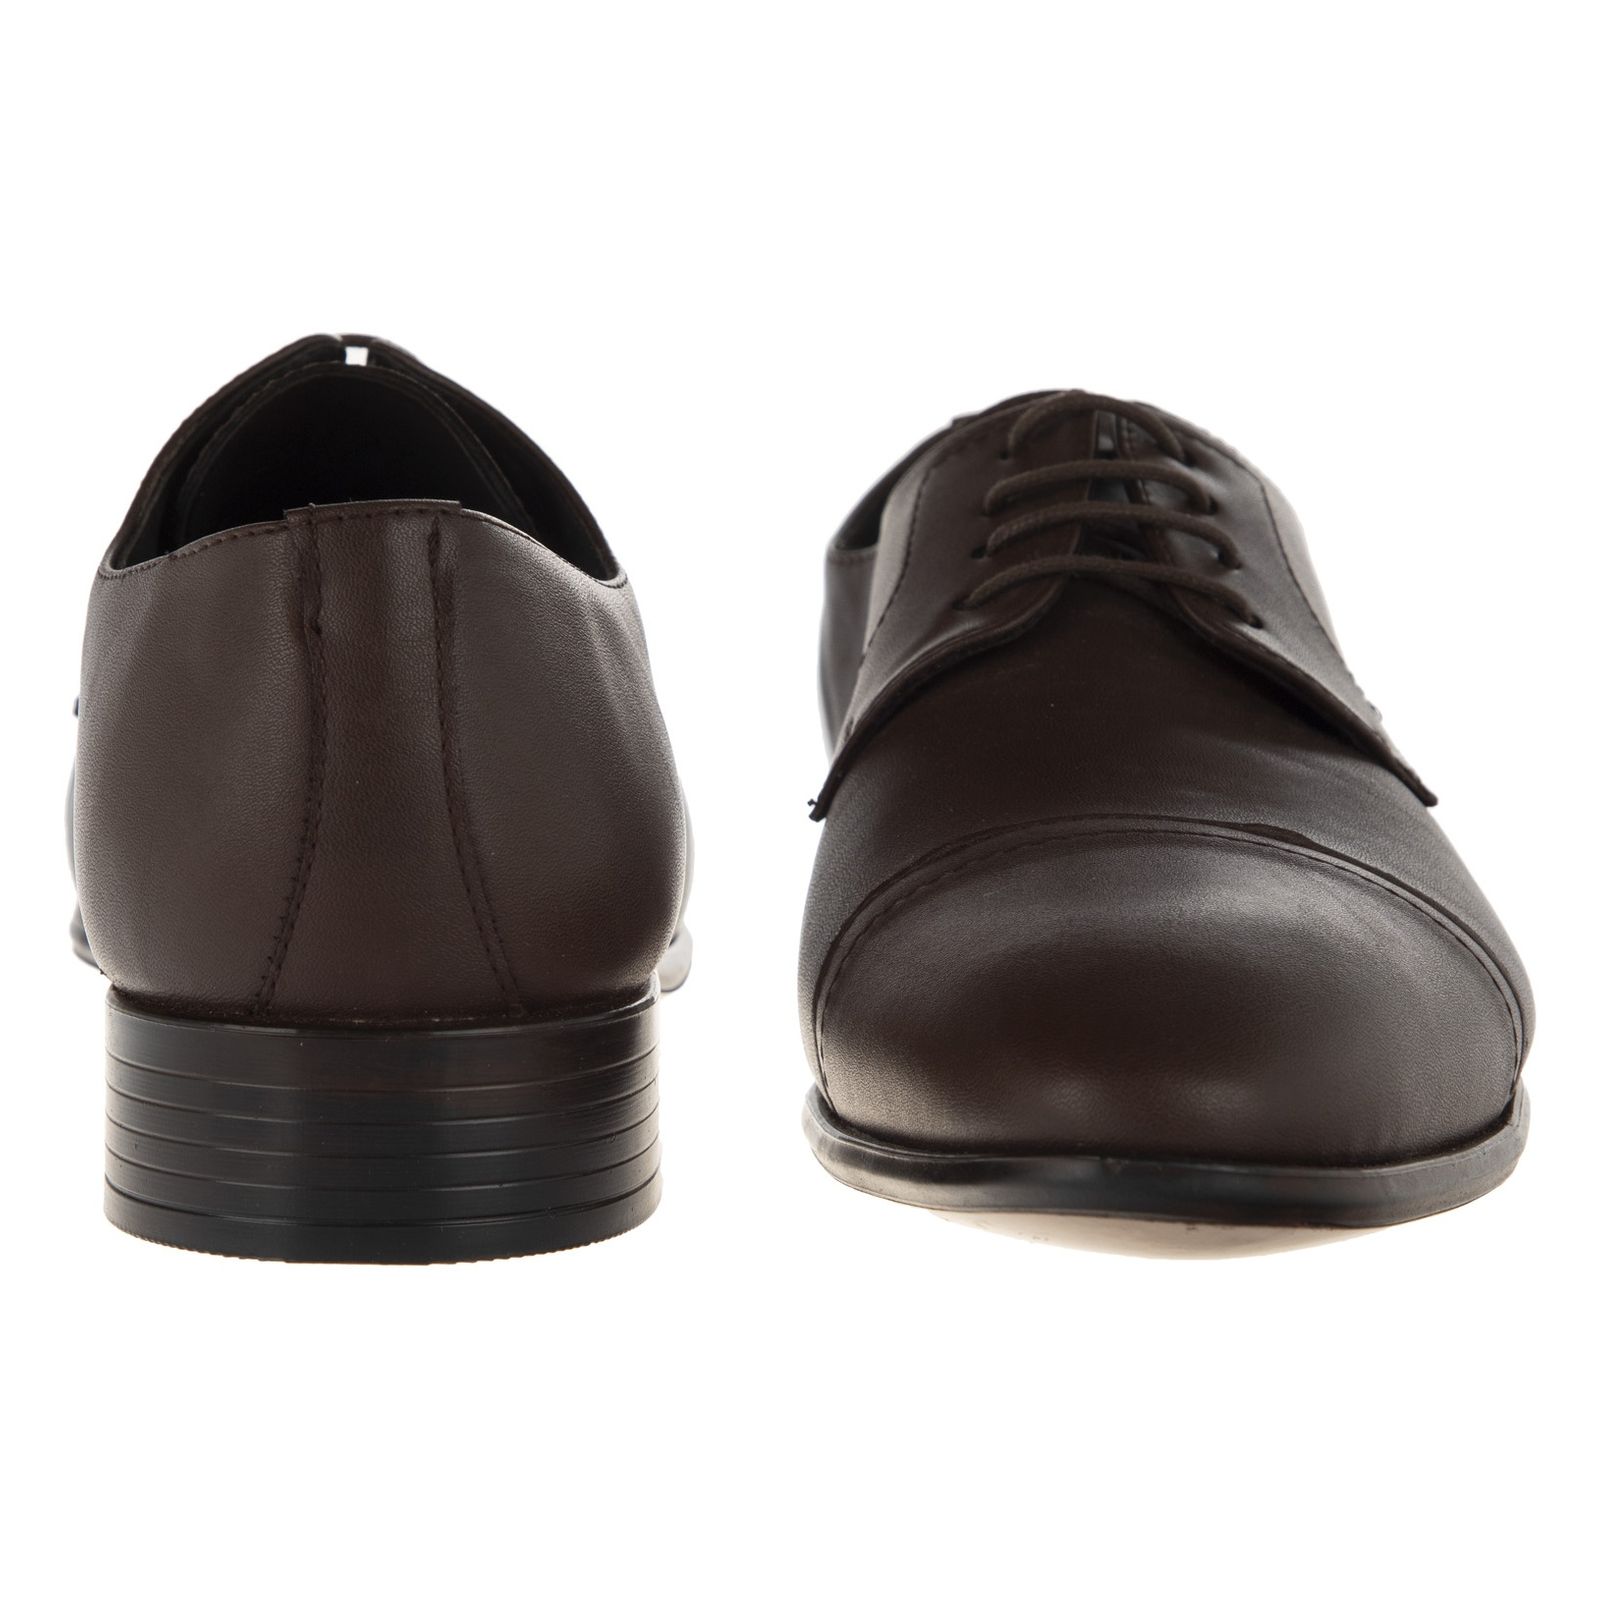 کفش مردانه گاراموند مدل 100255612-103 - قهوه ای - 5